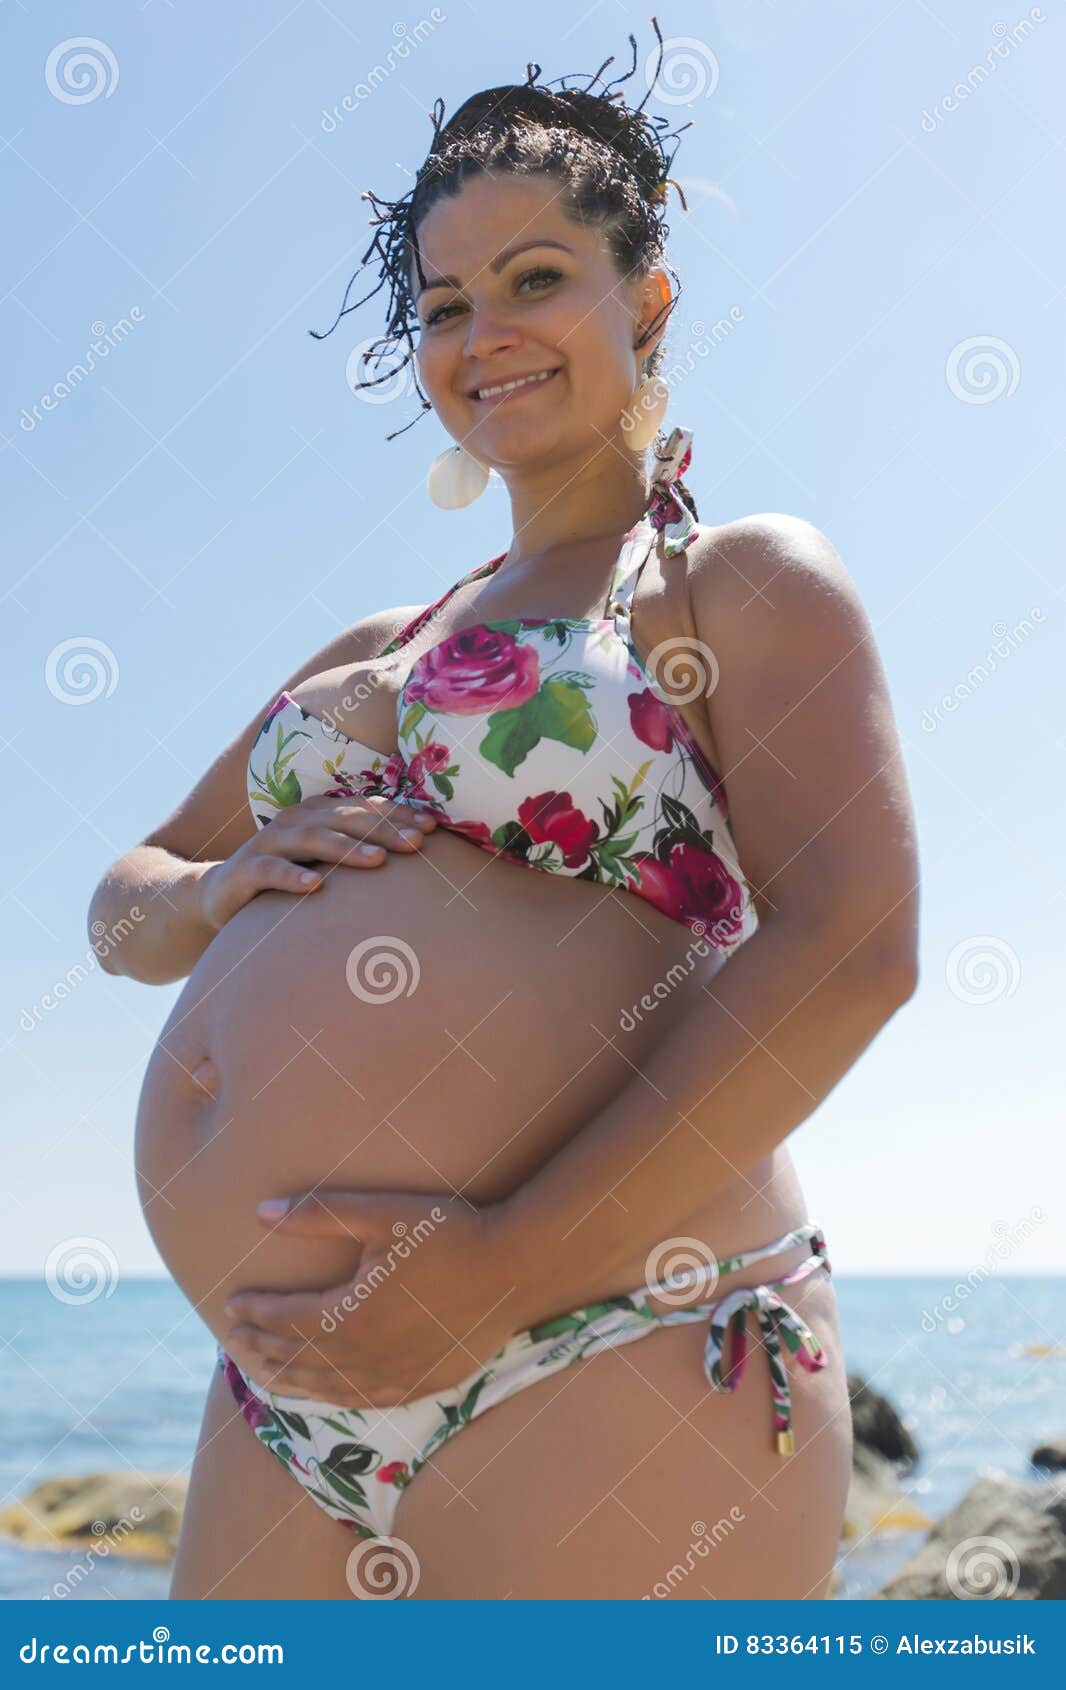 Articulación Morgue Ciudadanía La Mujer Embarazada Atractiva En Traje De Baño Toca Para Poseer La Panza  Imagen de archivo - Imagen de lifestyle, horizonte: 83364115